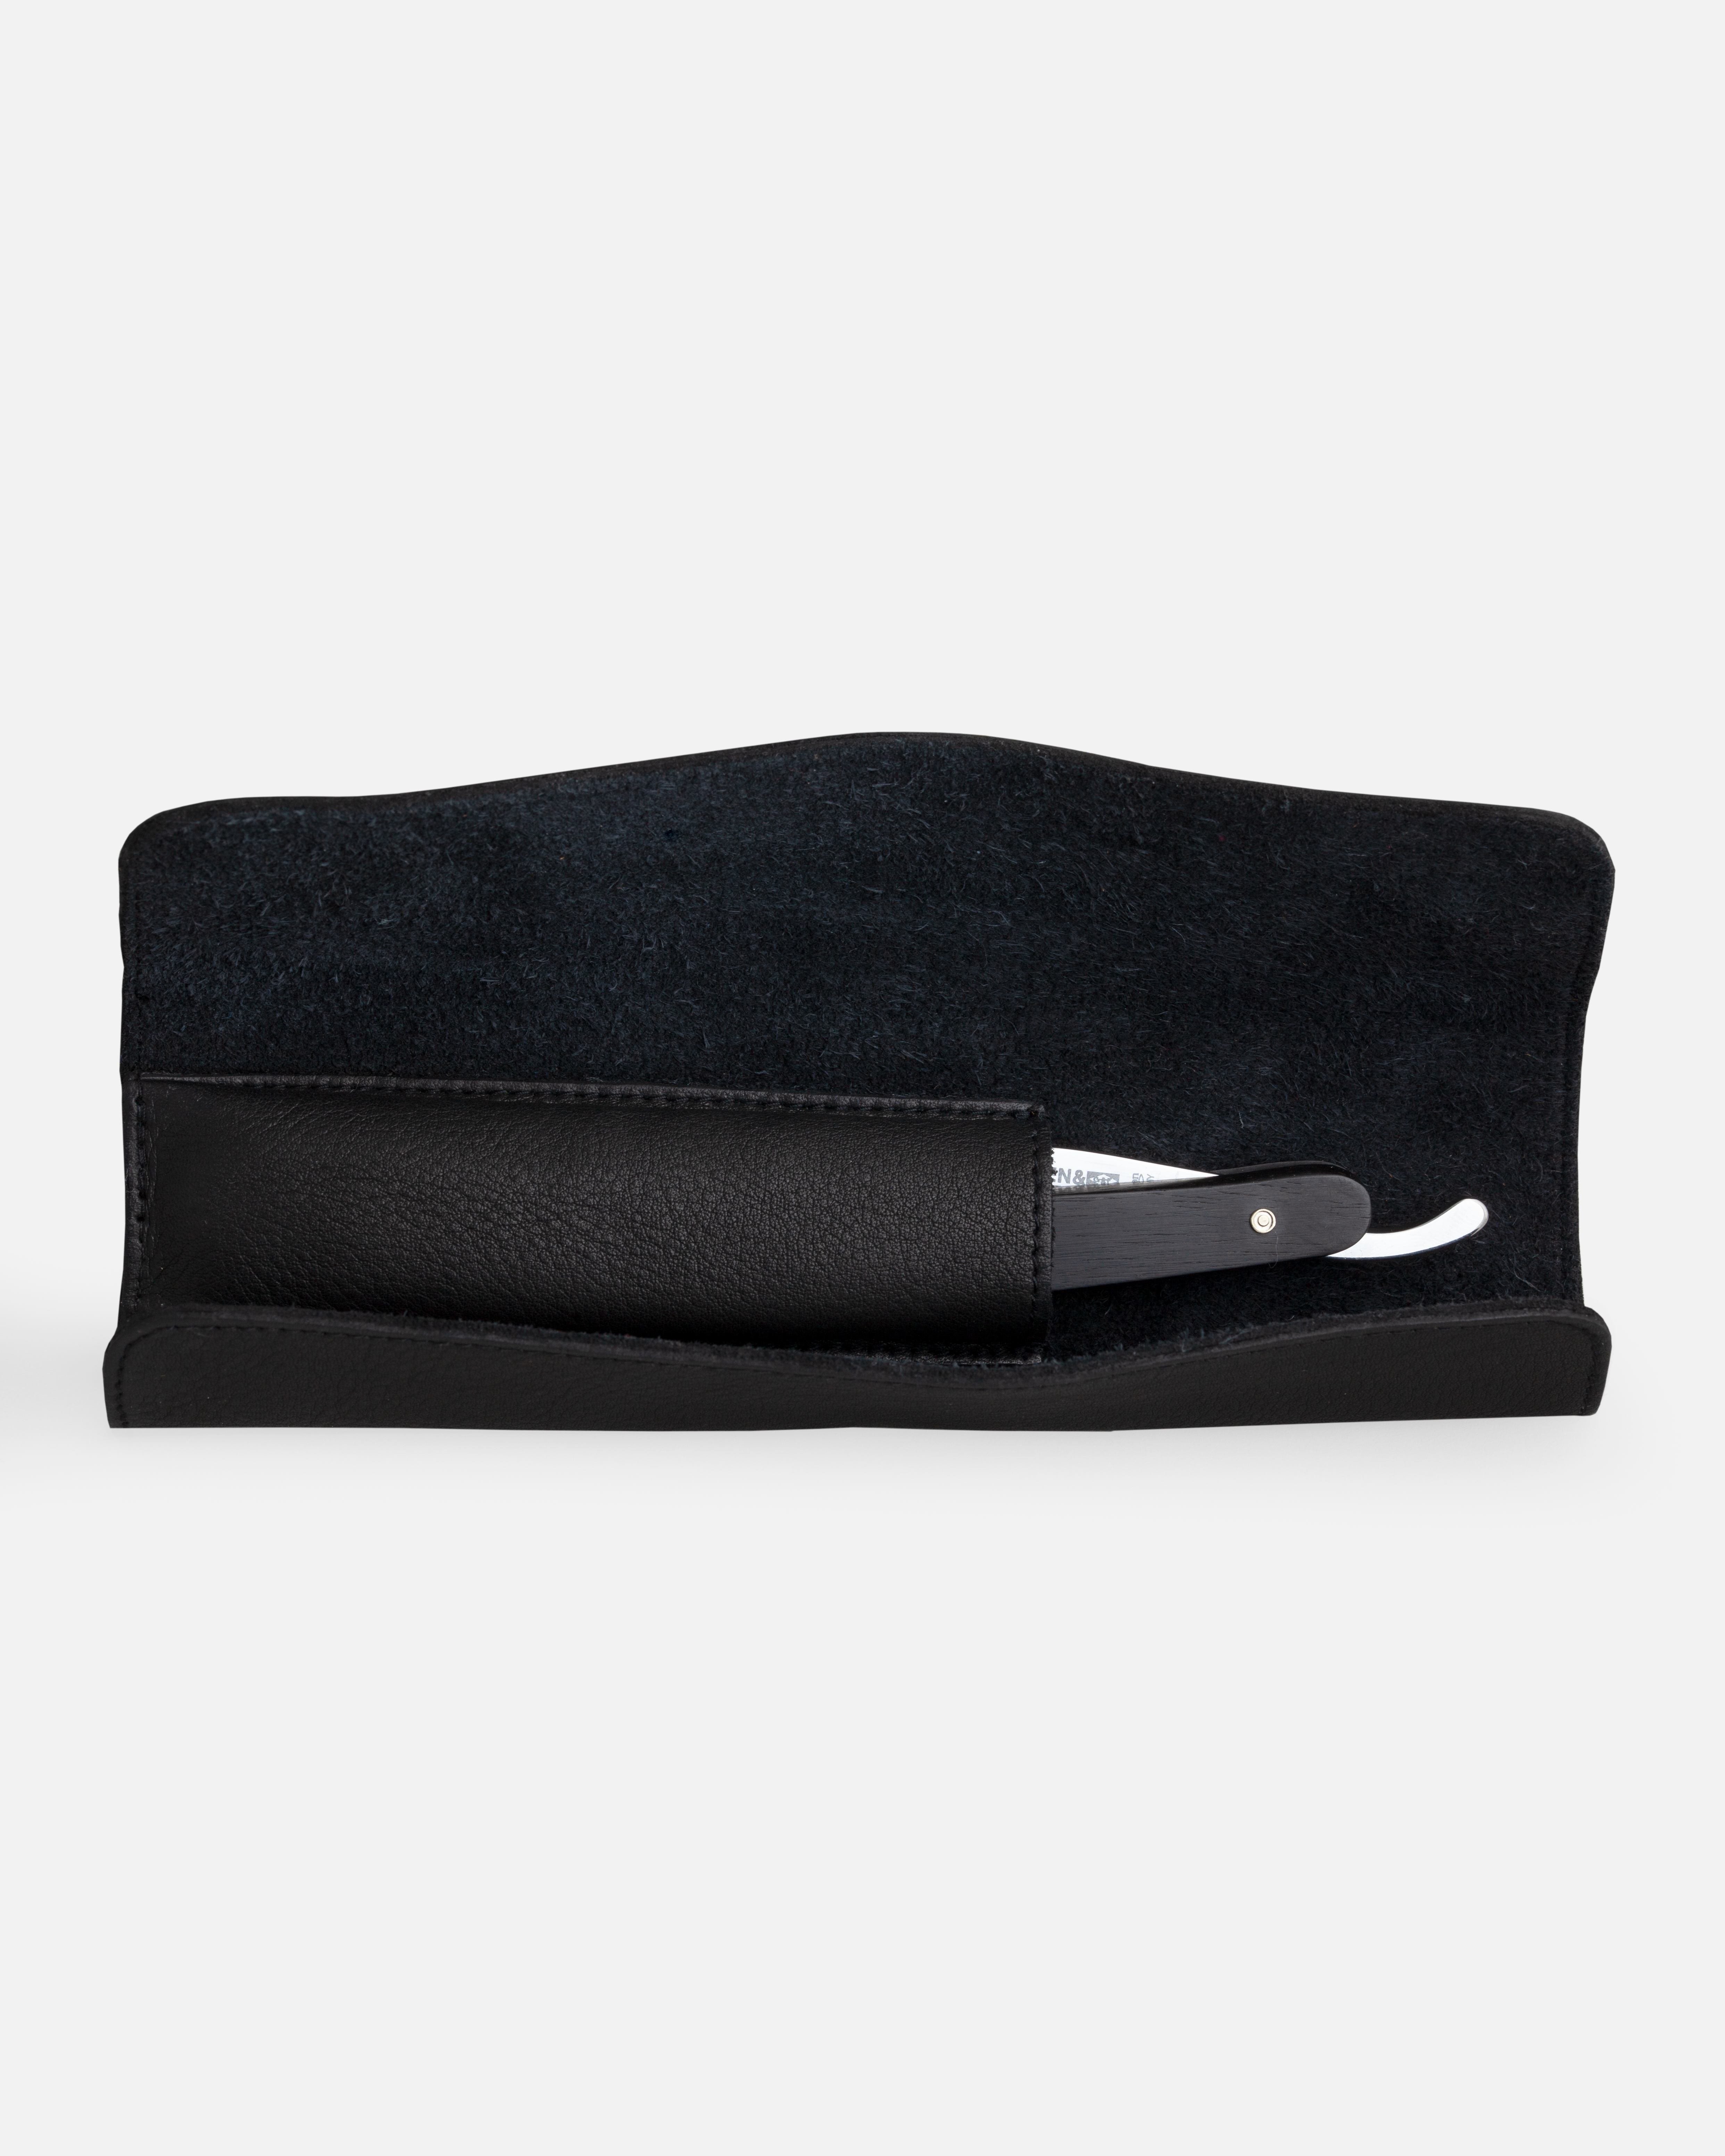 G&F Timor® Rolltasche für 1 Rasiermesser, Leder schwarz